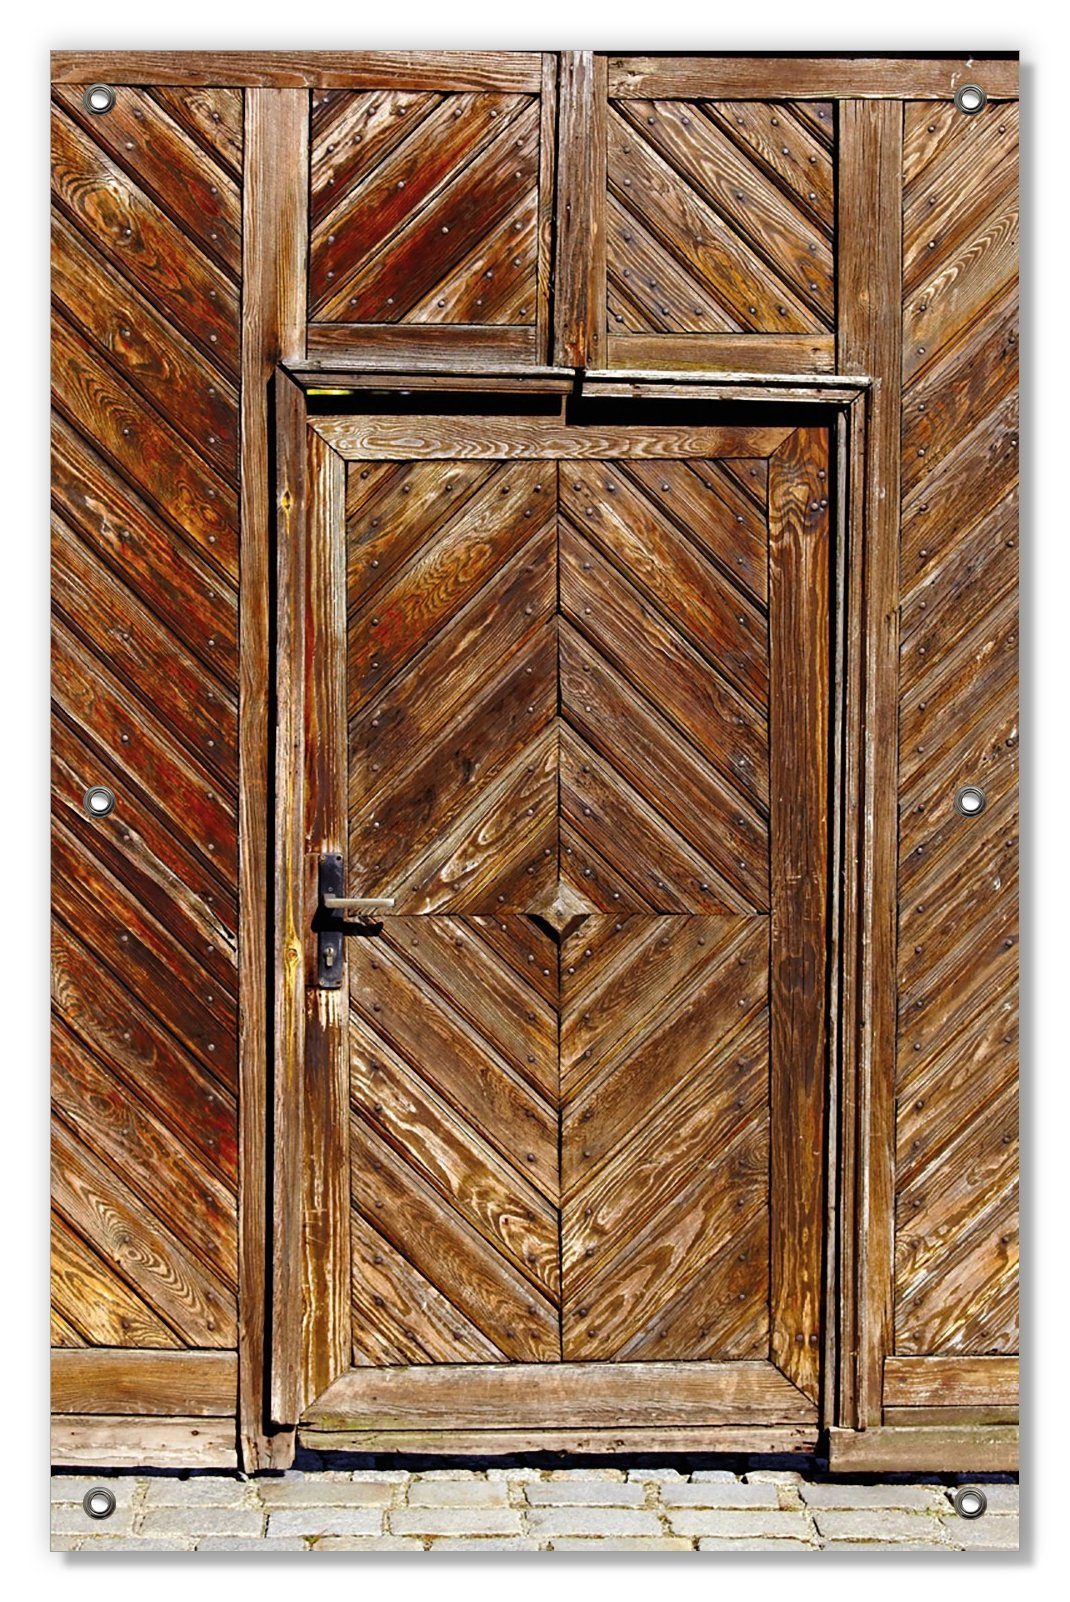 Sonnenschutz Alte Holztür mit diagonalem Muster, Wallario, blickdicht, mit Saugnäpfen, wiederablösbar und wiederverwendbar